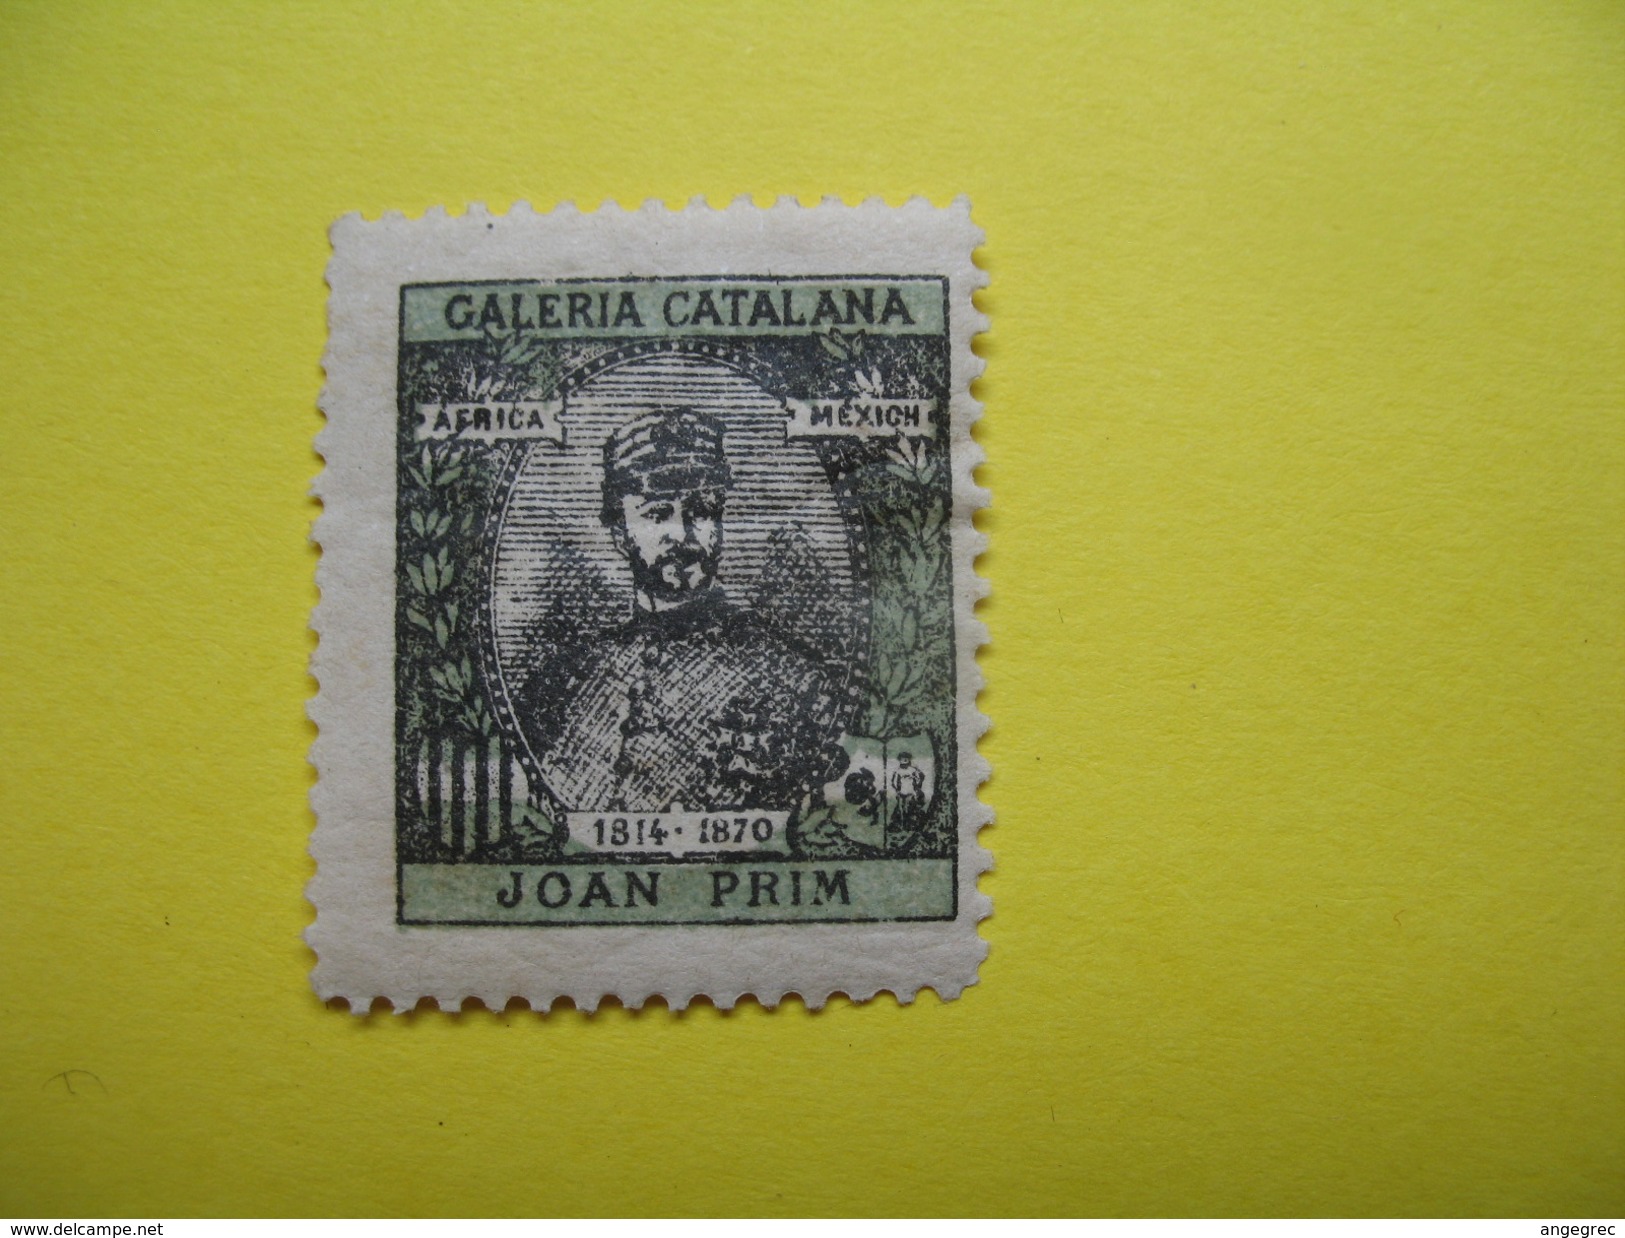 Vignette Galeria Catalana Africa-Mexic  Joan Prim 1814-1870 - Cinderellas